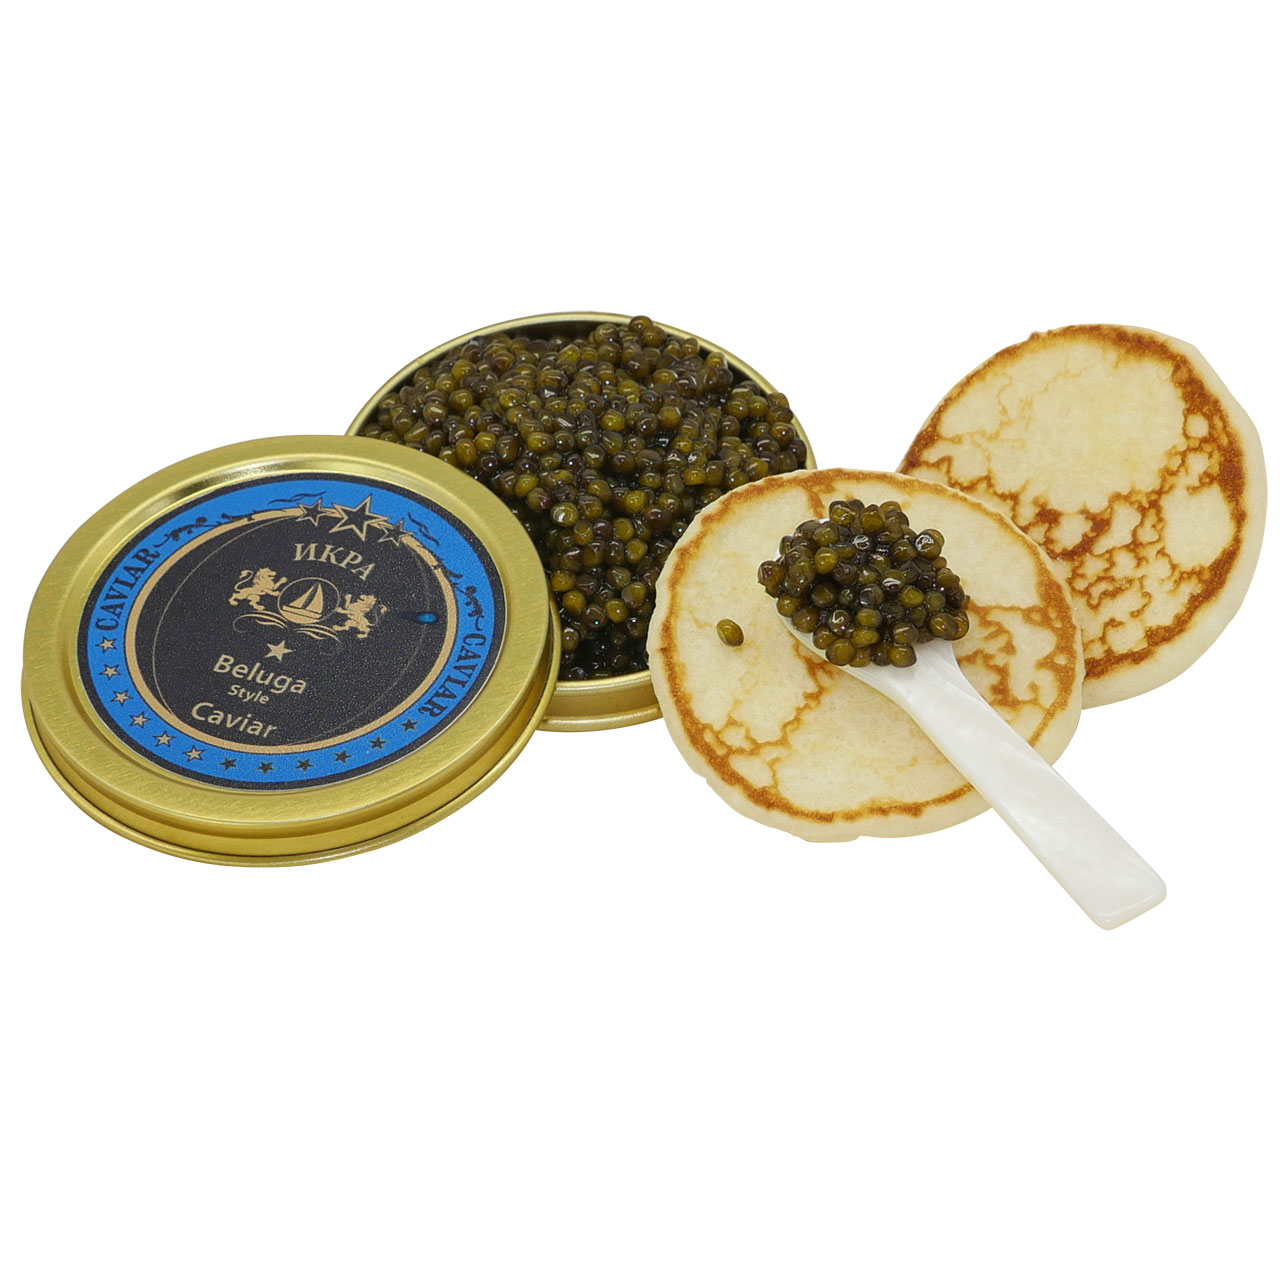 Kaviar Duo 2 x 30g (Osietra, Beluga Premier)